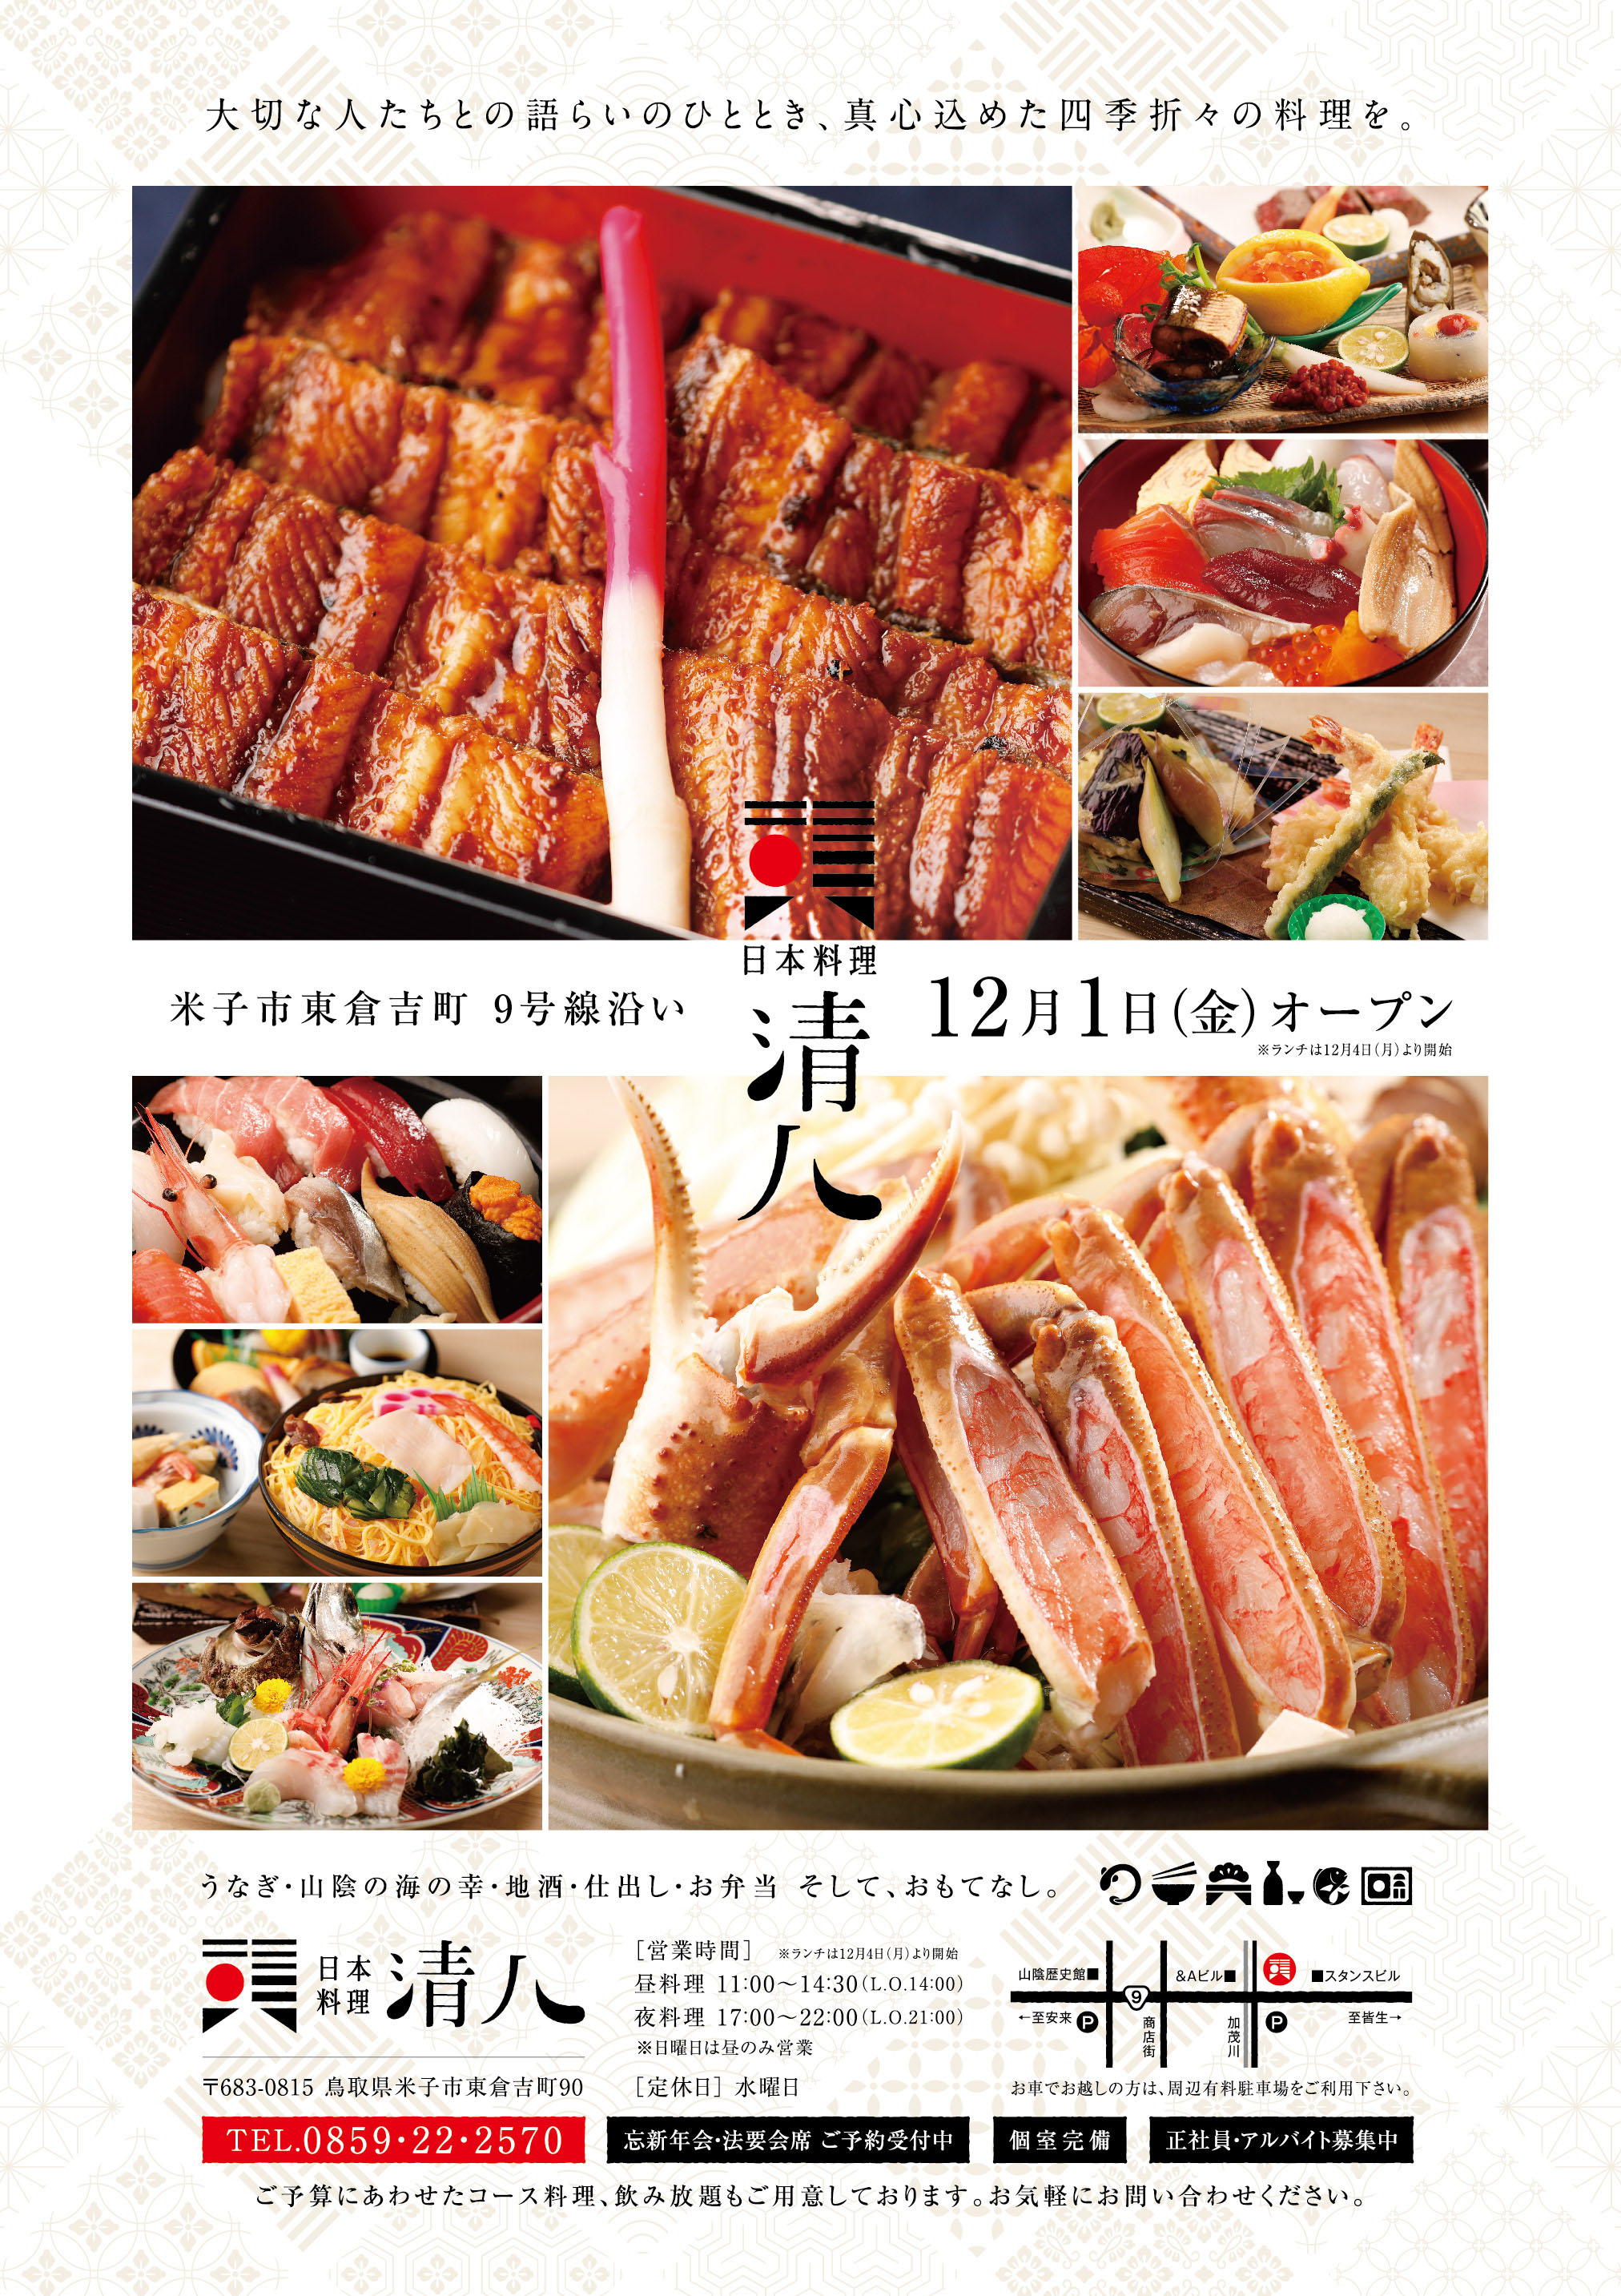 制作実績 日本料理 清八 様 ウェブマガジン カミナリ 鳥取県米子市のホームページ制作 広告代理店 デザイン